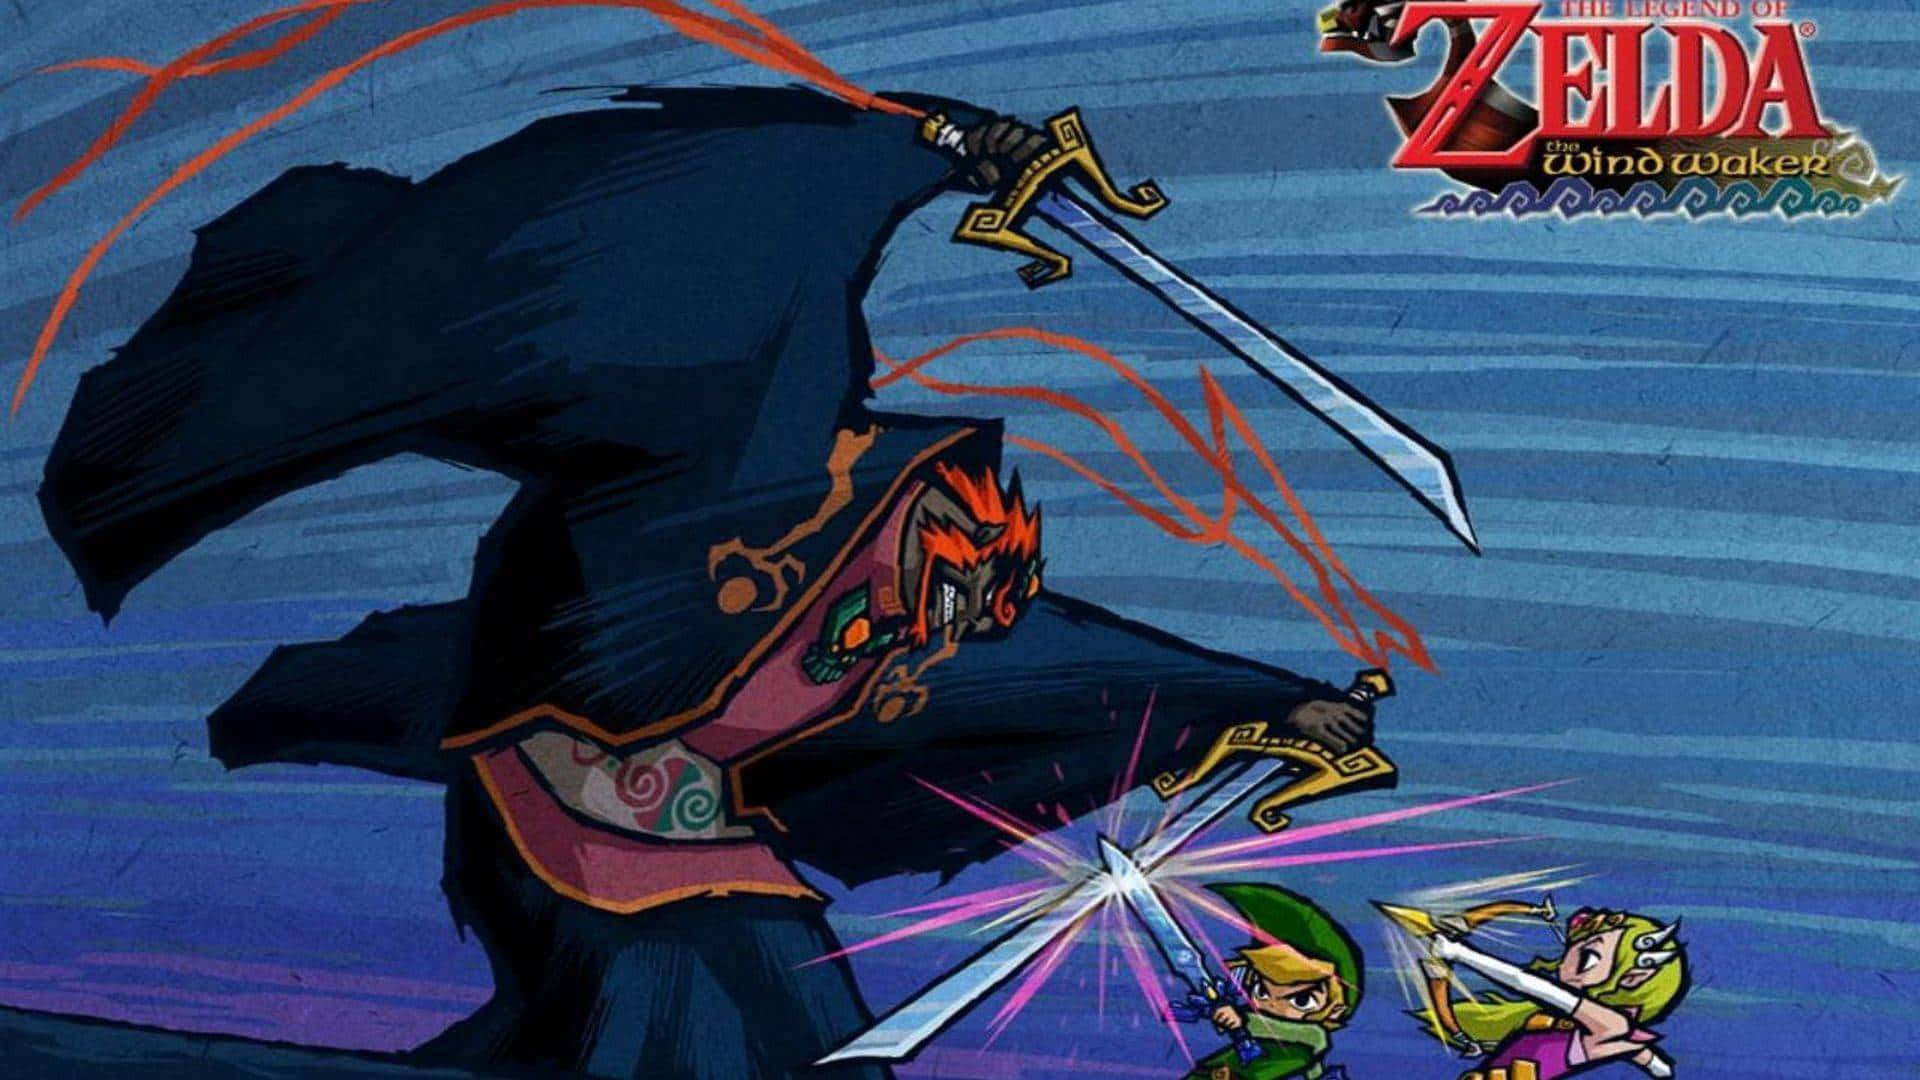 The Legend of Zelda: The Wind Waker - Heroic Adventure Awaits Wallpaper